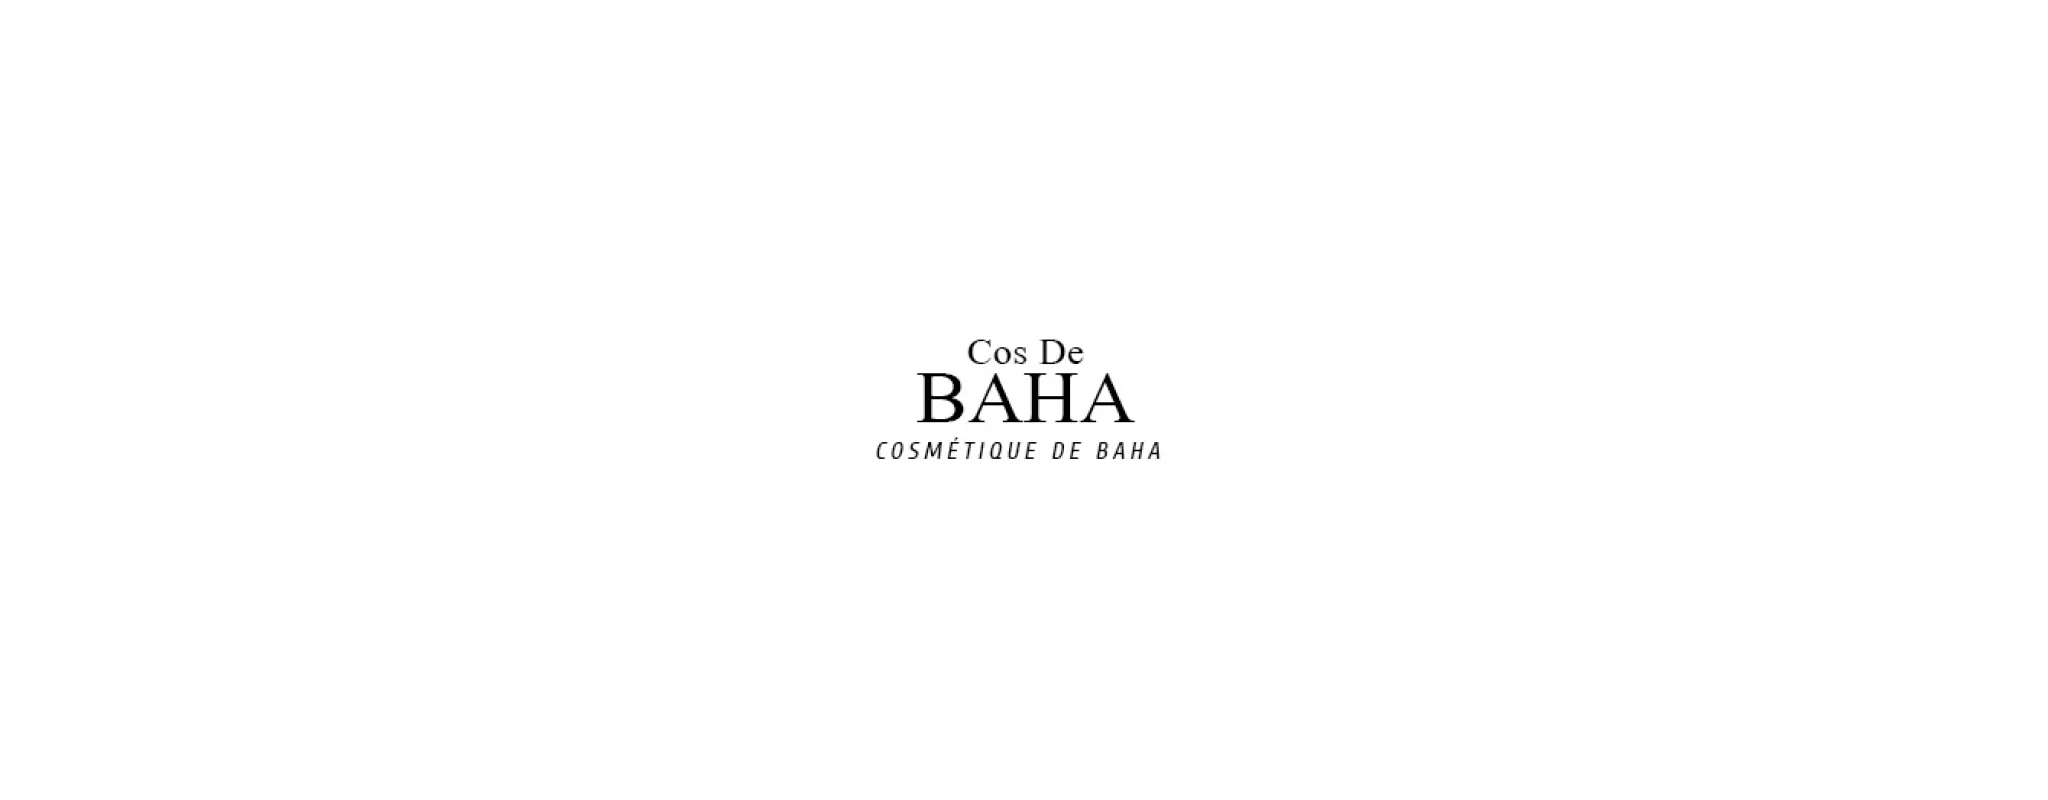 Cos de Baha Logo